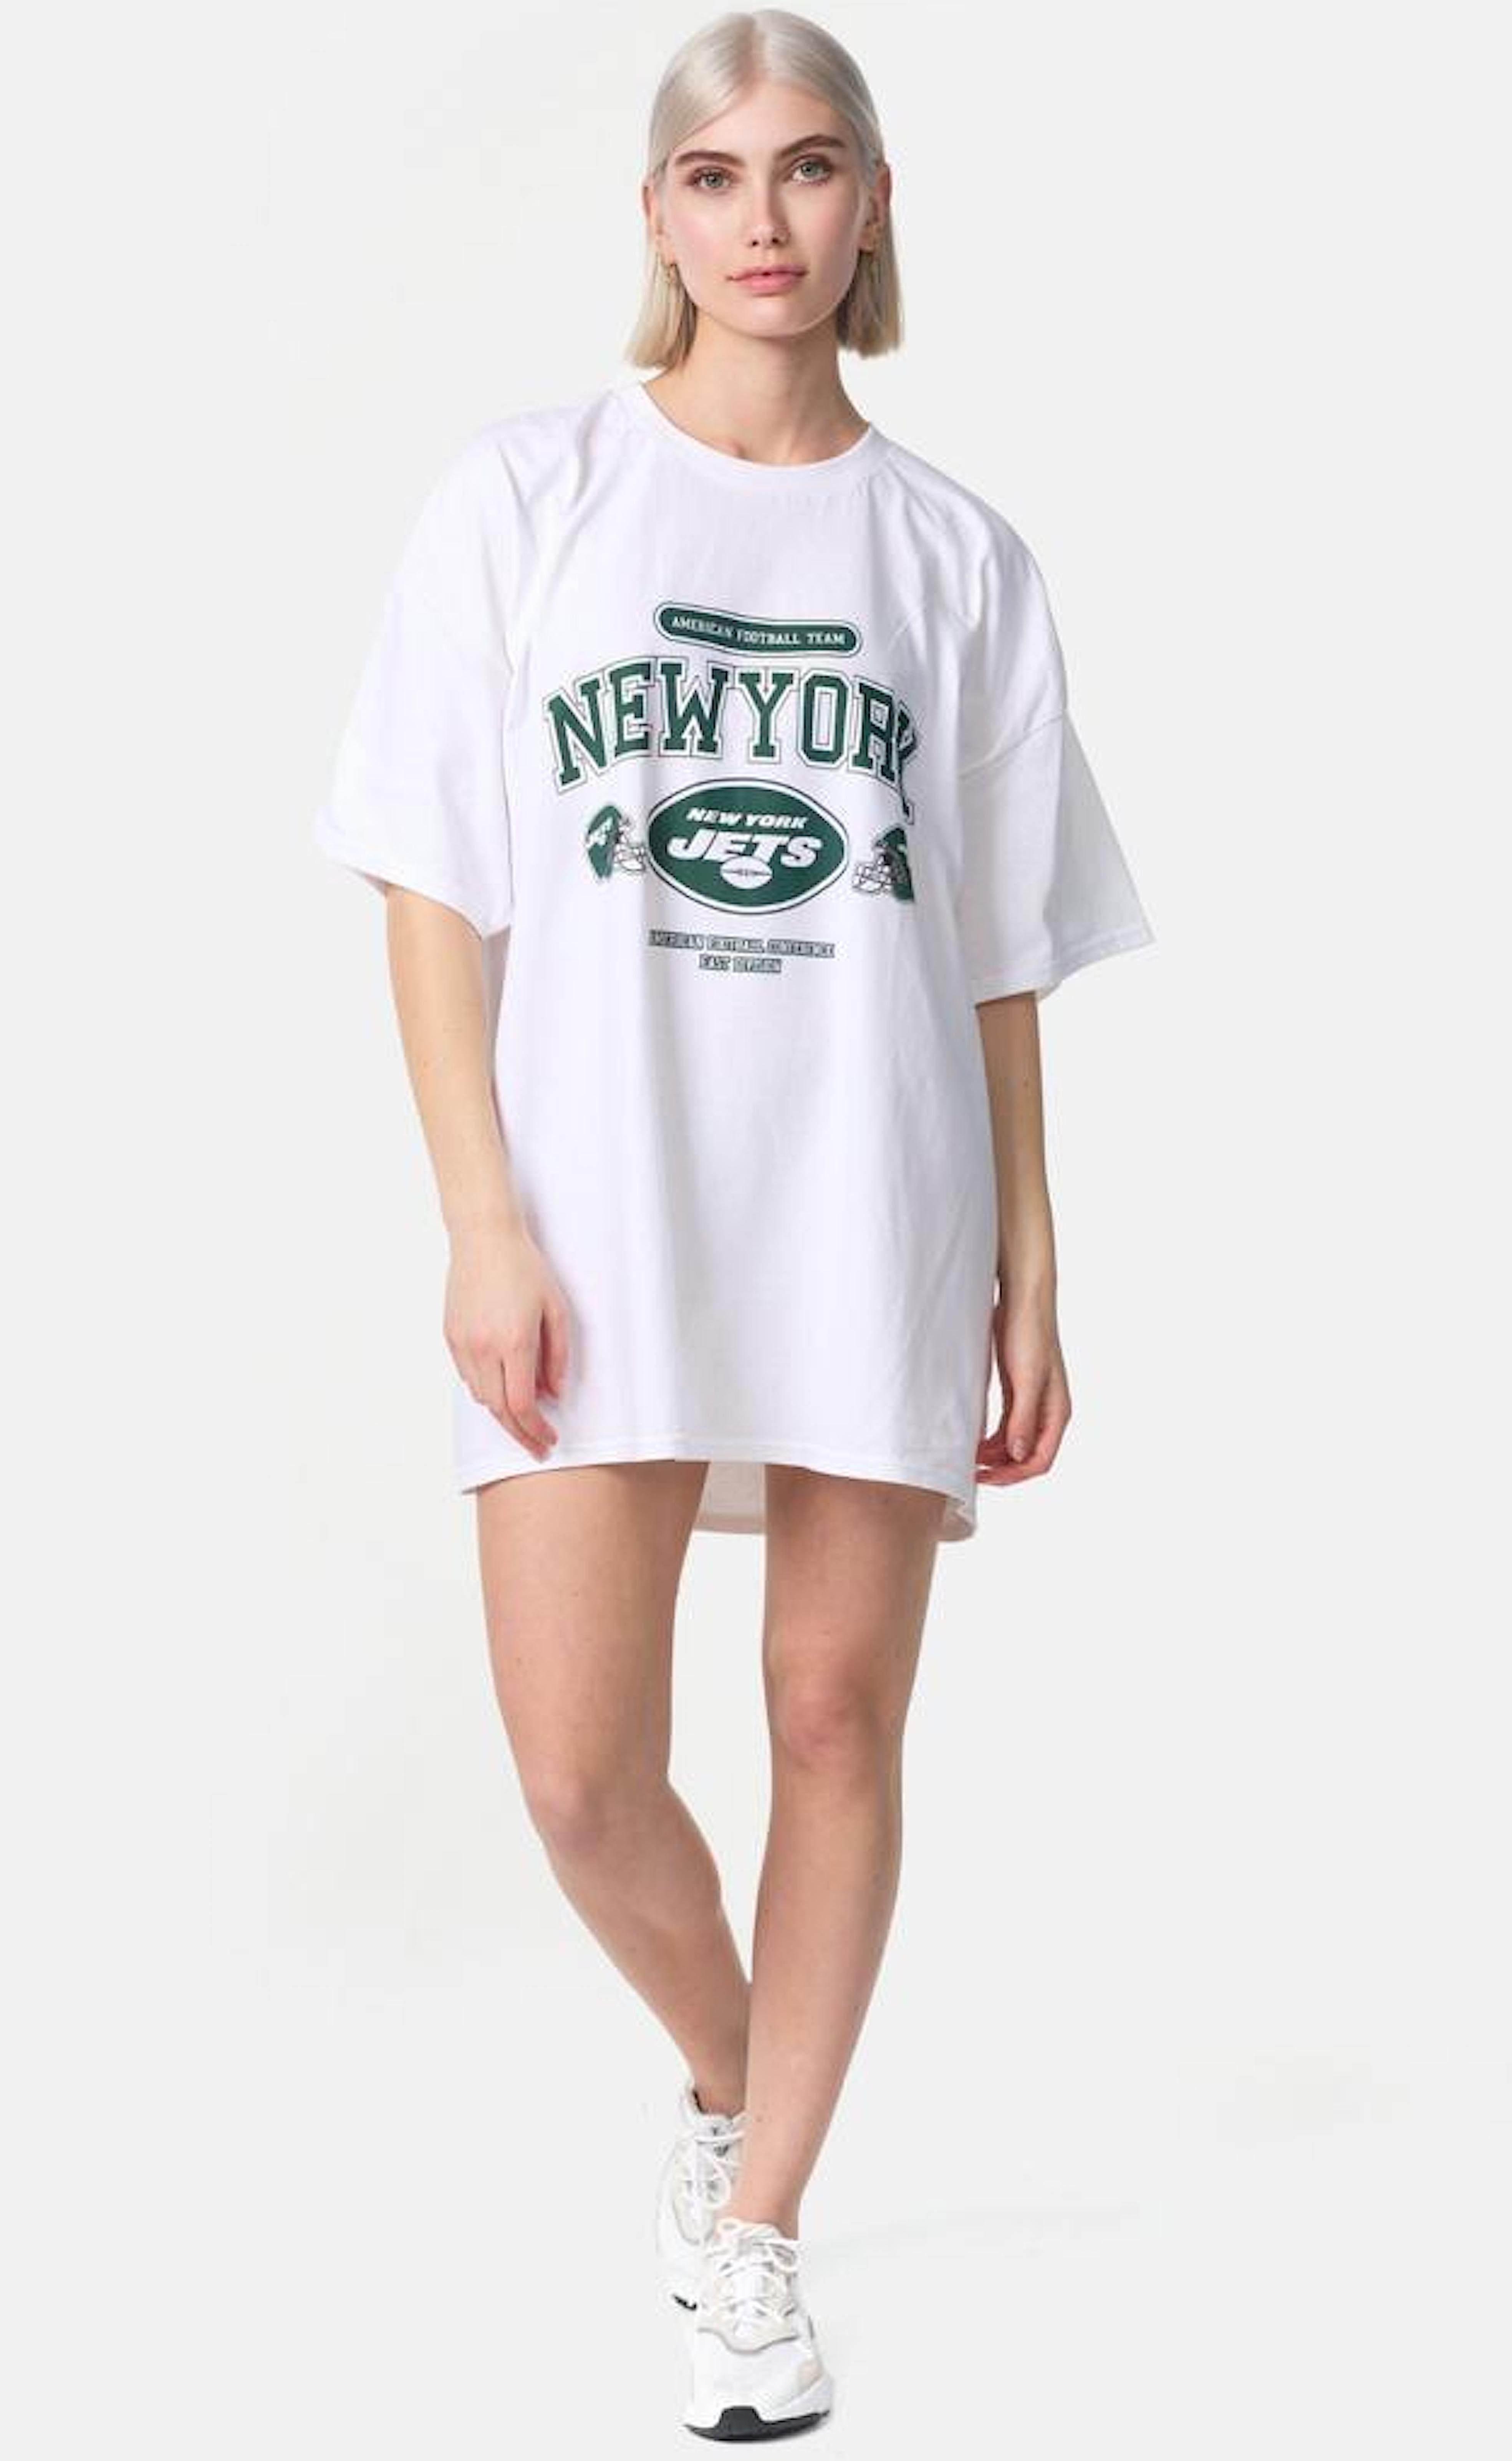 Worldclassca T-Shirt Worldclassca Oversized NEW YORK Print T-Shirt lang Tee Sommer Oberteil Weiß